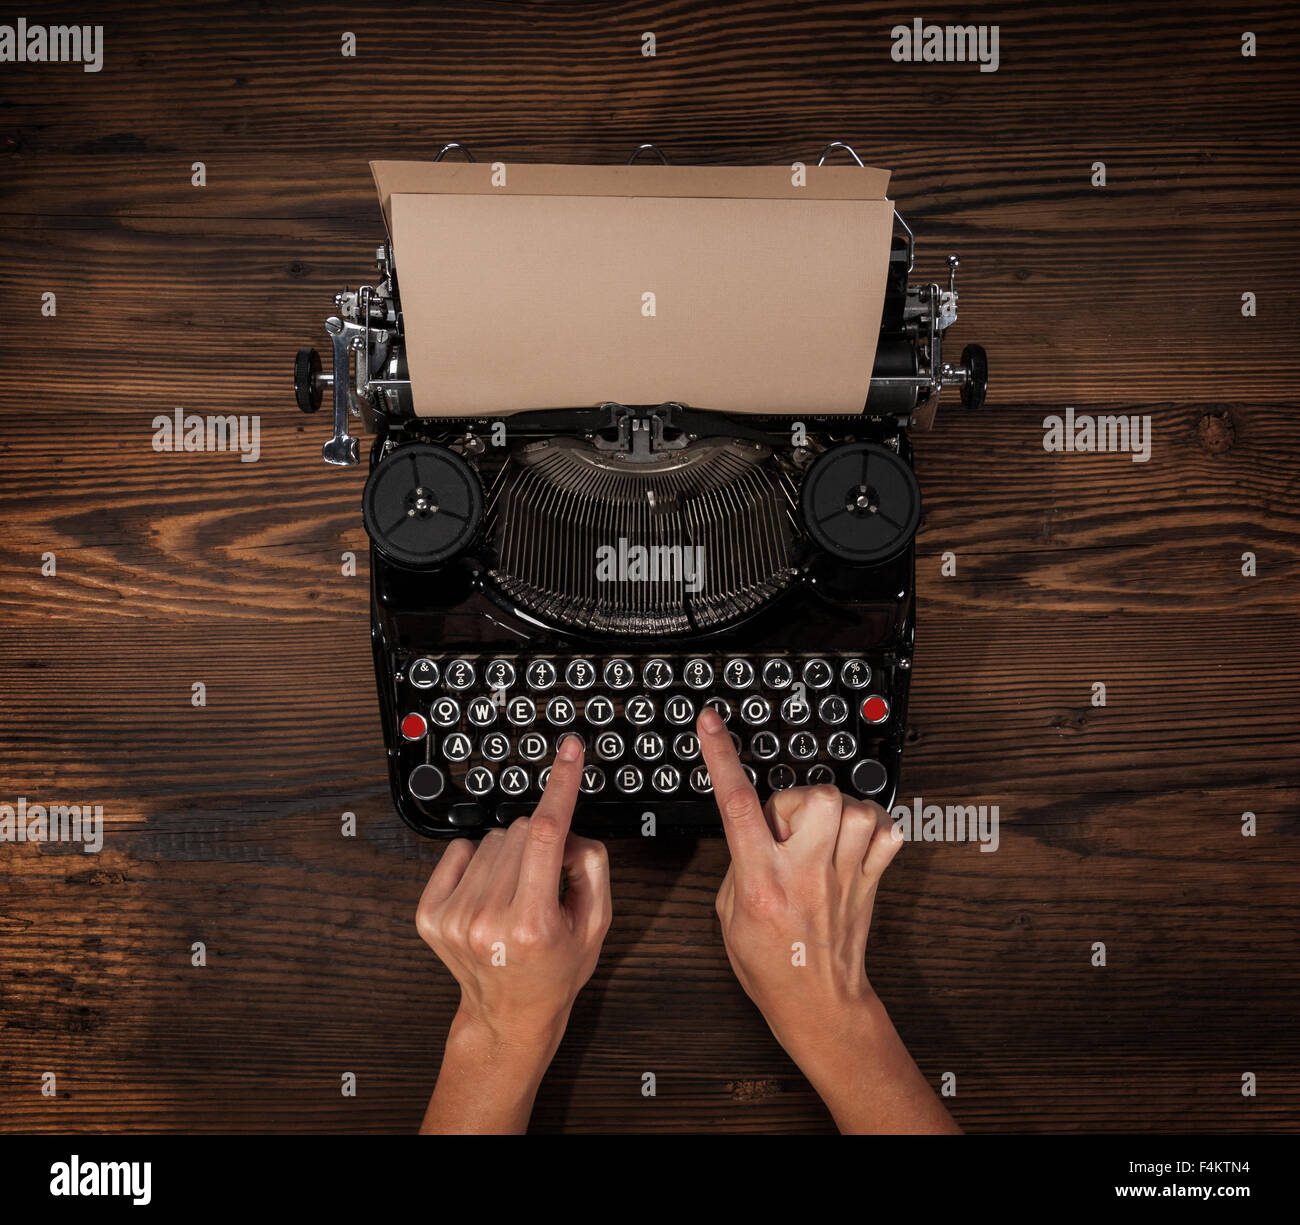 Frau auf einer alten Schreibmaschine zu tippen Stockfoto